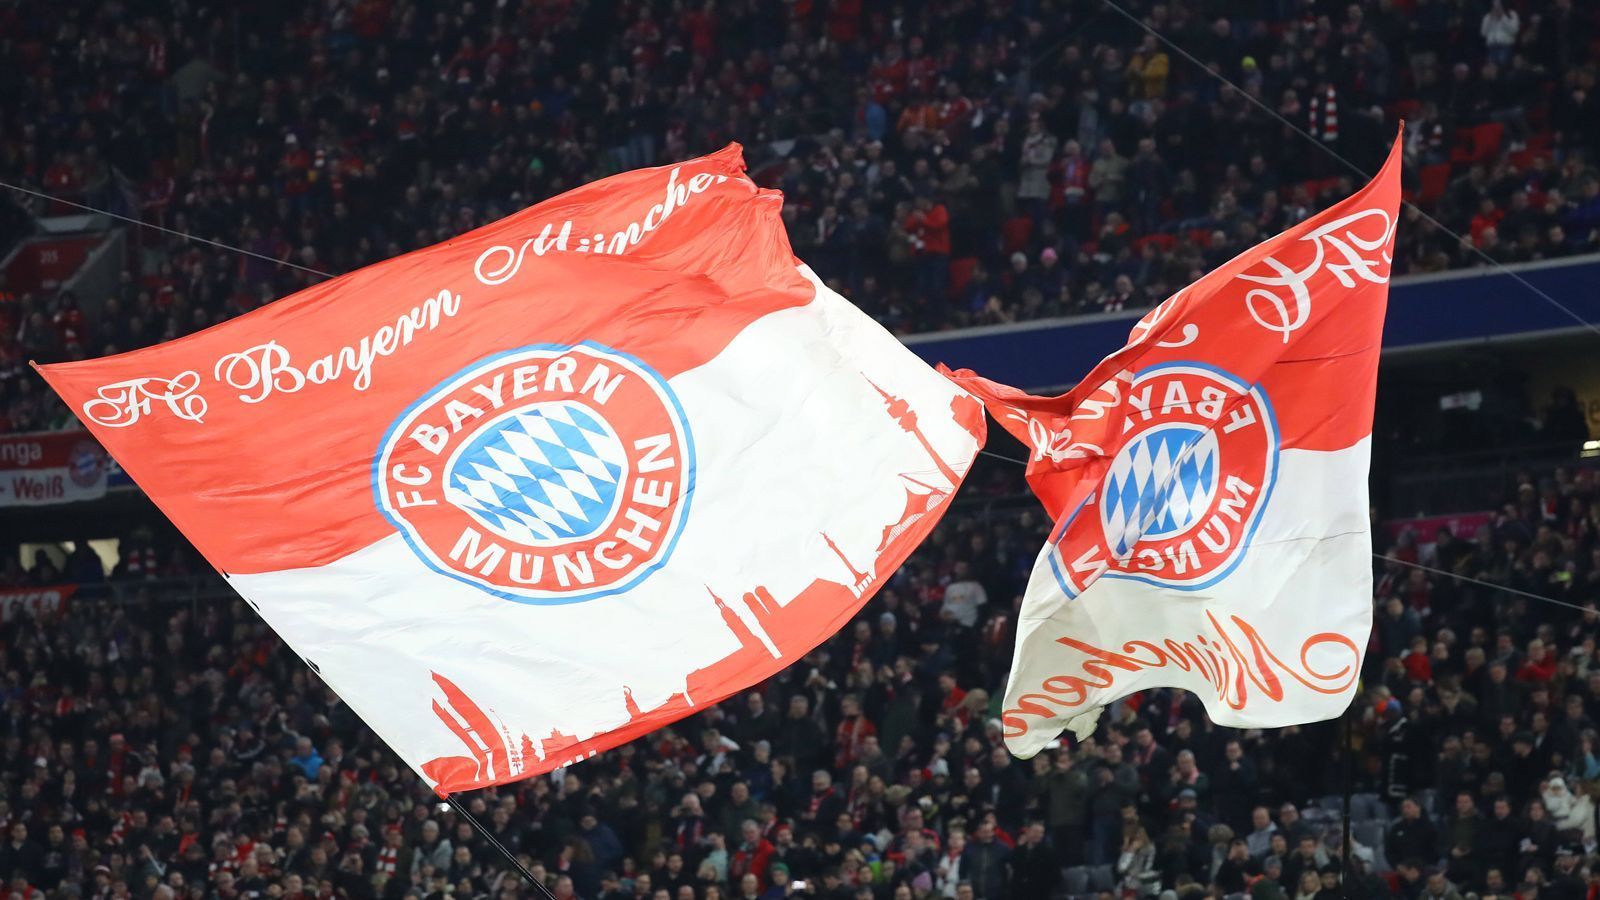 
                <strong>Im Jahr 1920 hatte der FCB schon 700 Mitglieder</strong><br>
                Heute zählt der FC Bayern München an die 300.000 Mitglieder und auch schon 1920 waren es für damalige Verhältnisse viele. 700 eingetragene Mitglieder wies das Bayern-Vereinsregister 1920 auf. Kurioser Vergleich: Der derzeit härteste Bayern-Verfolger RB Leipzig hat im Jahr 2020 gerade einmal 17 offizielle Mitglieder.
              